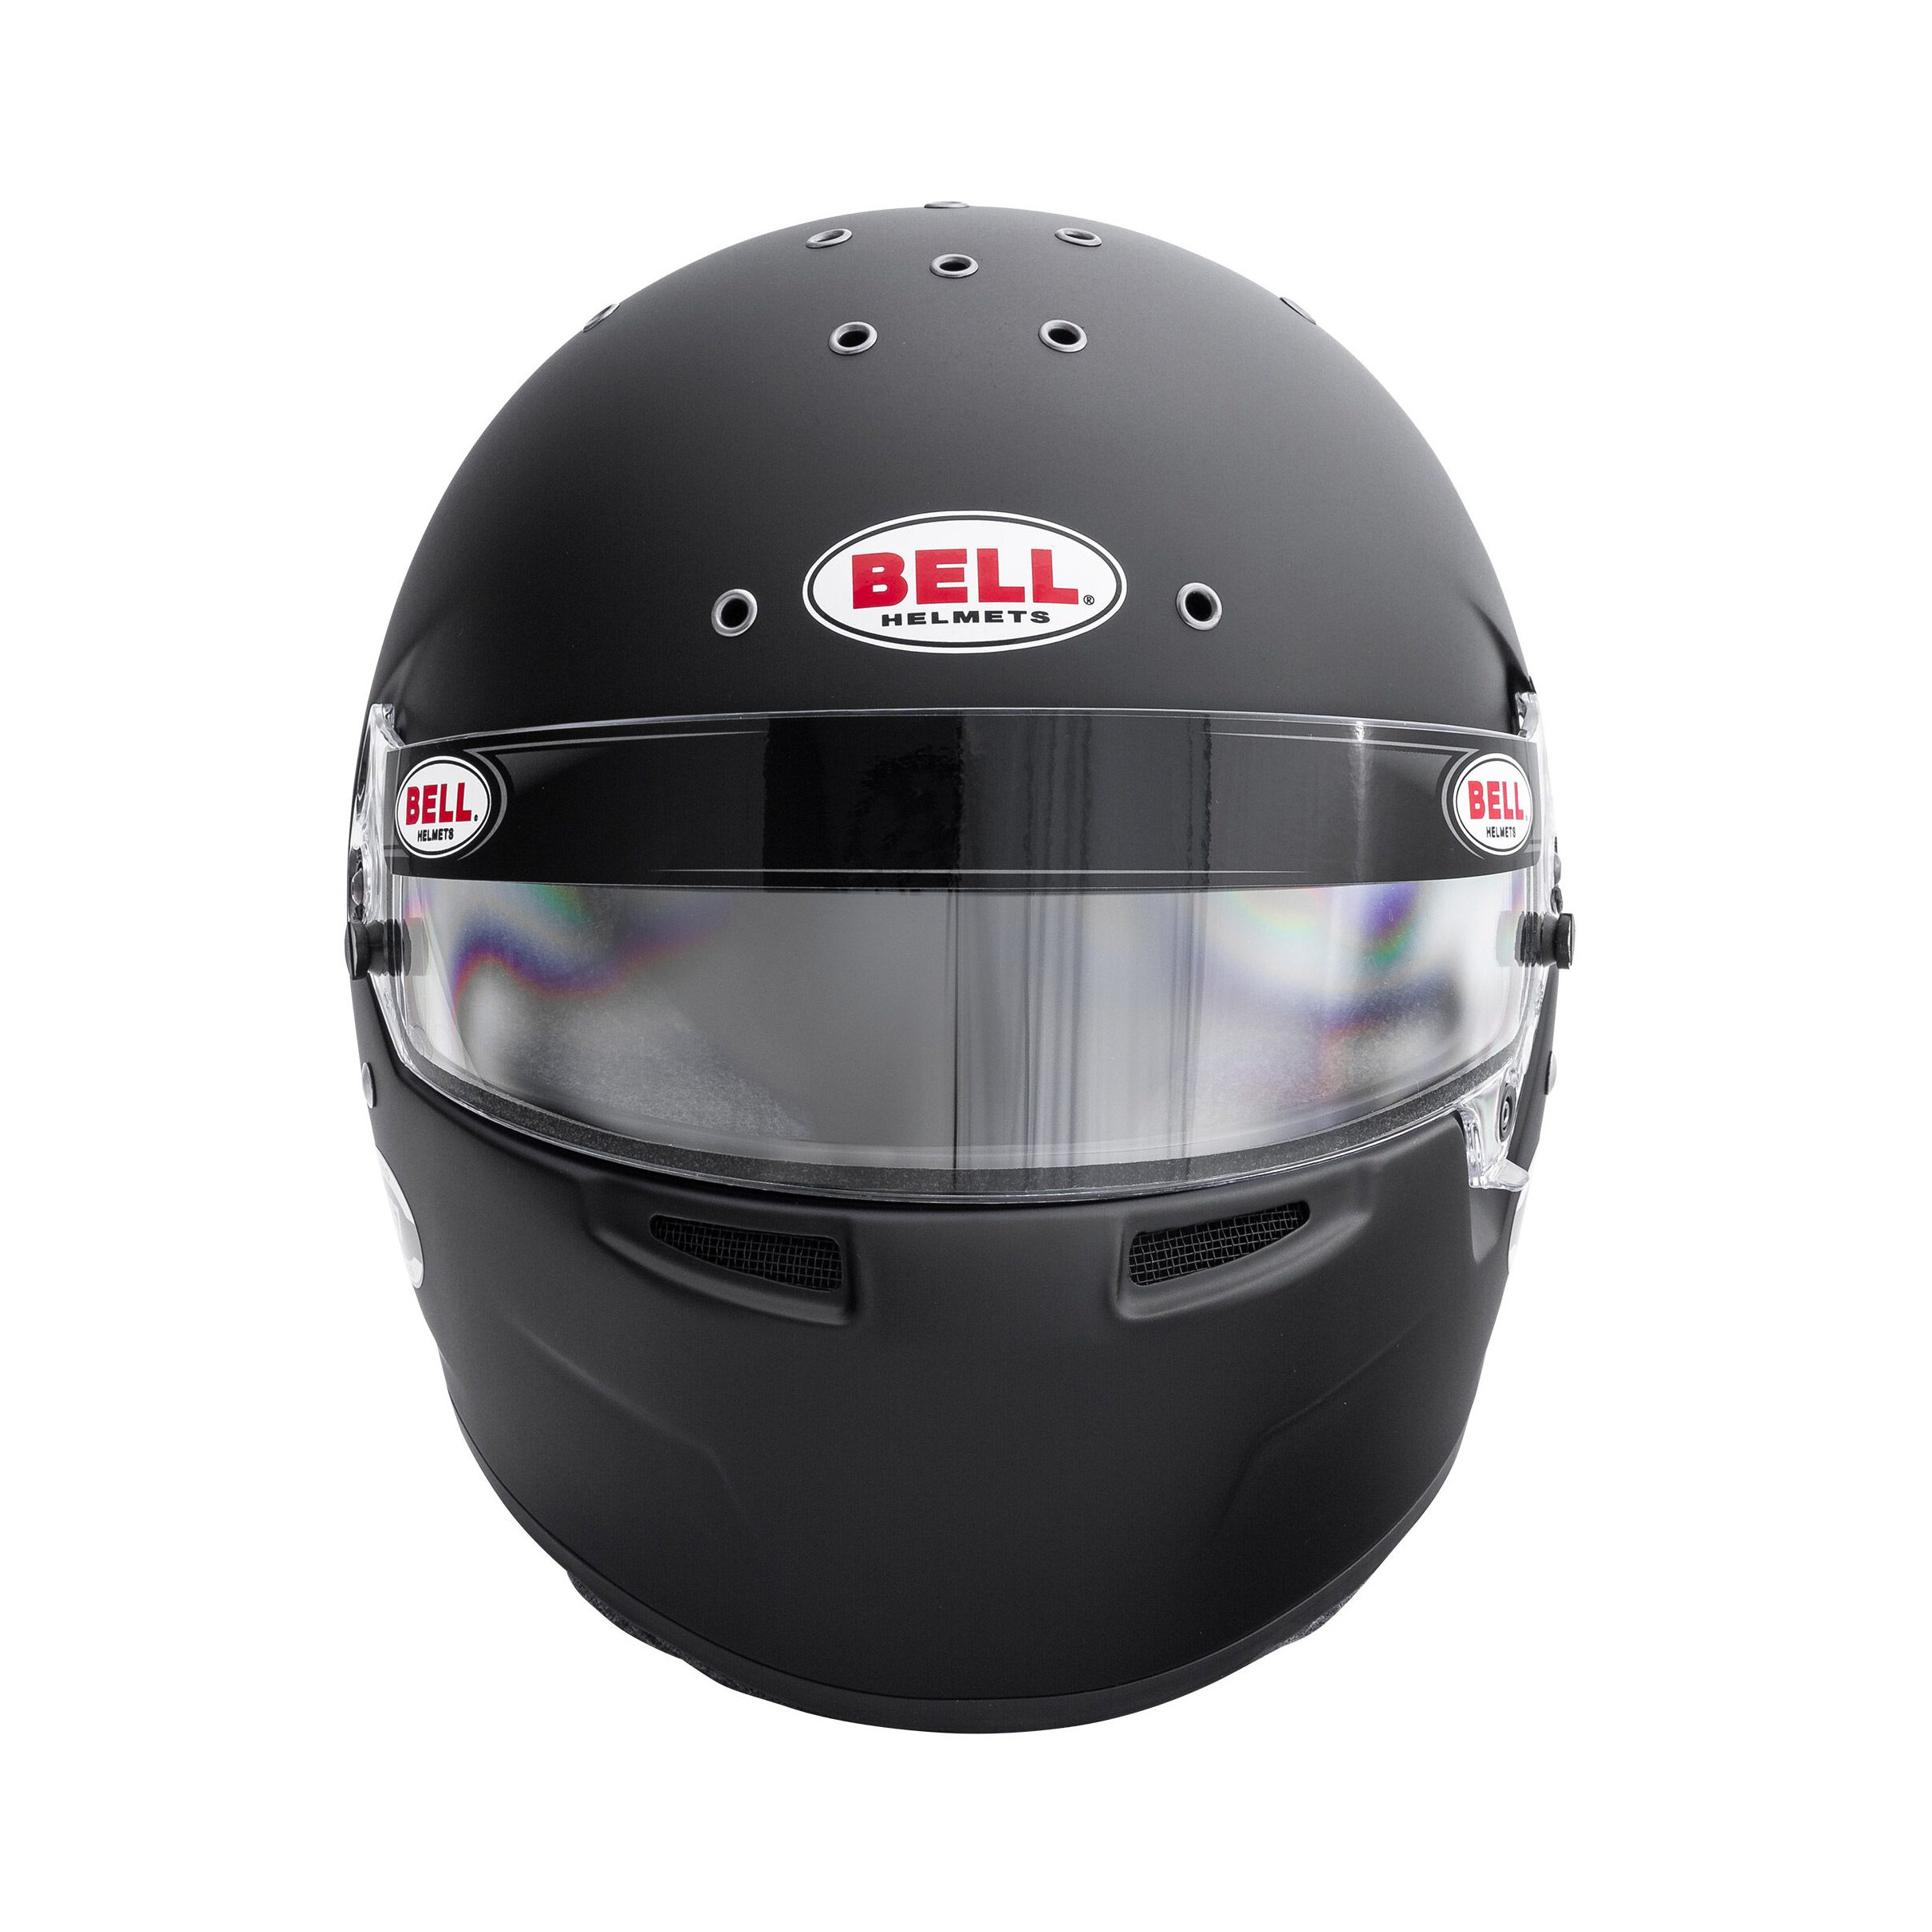 Helmet Bell RS7 Pro Hans Black